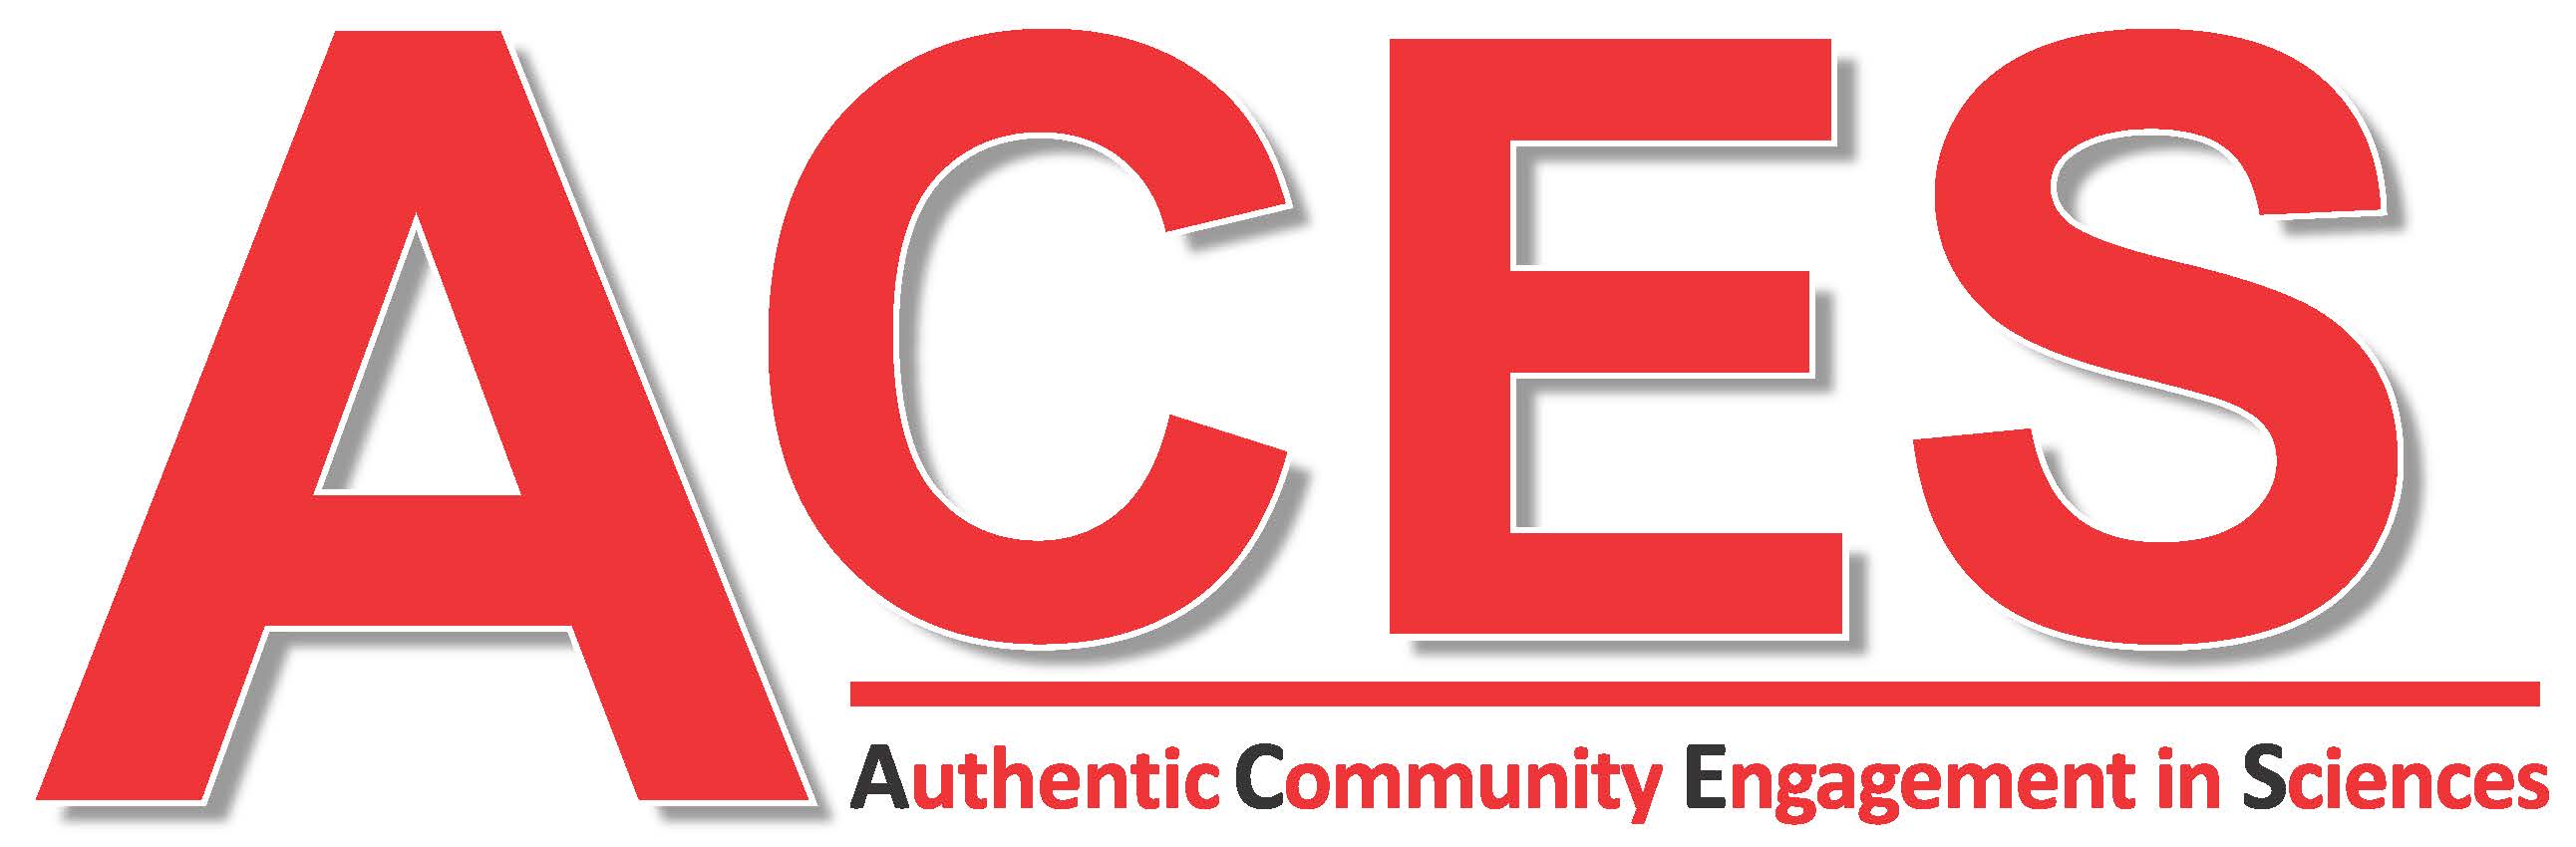 ACES logo